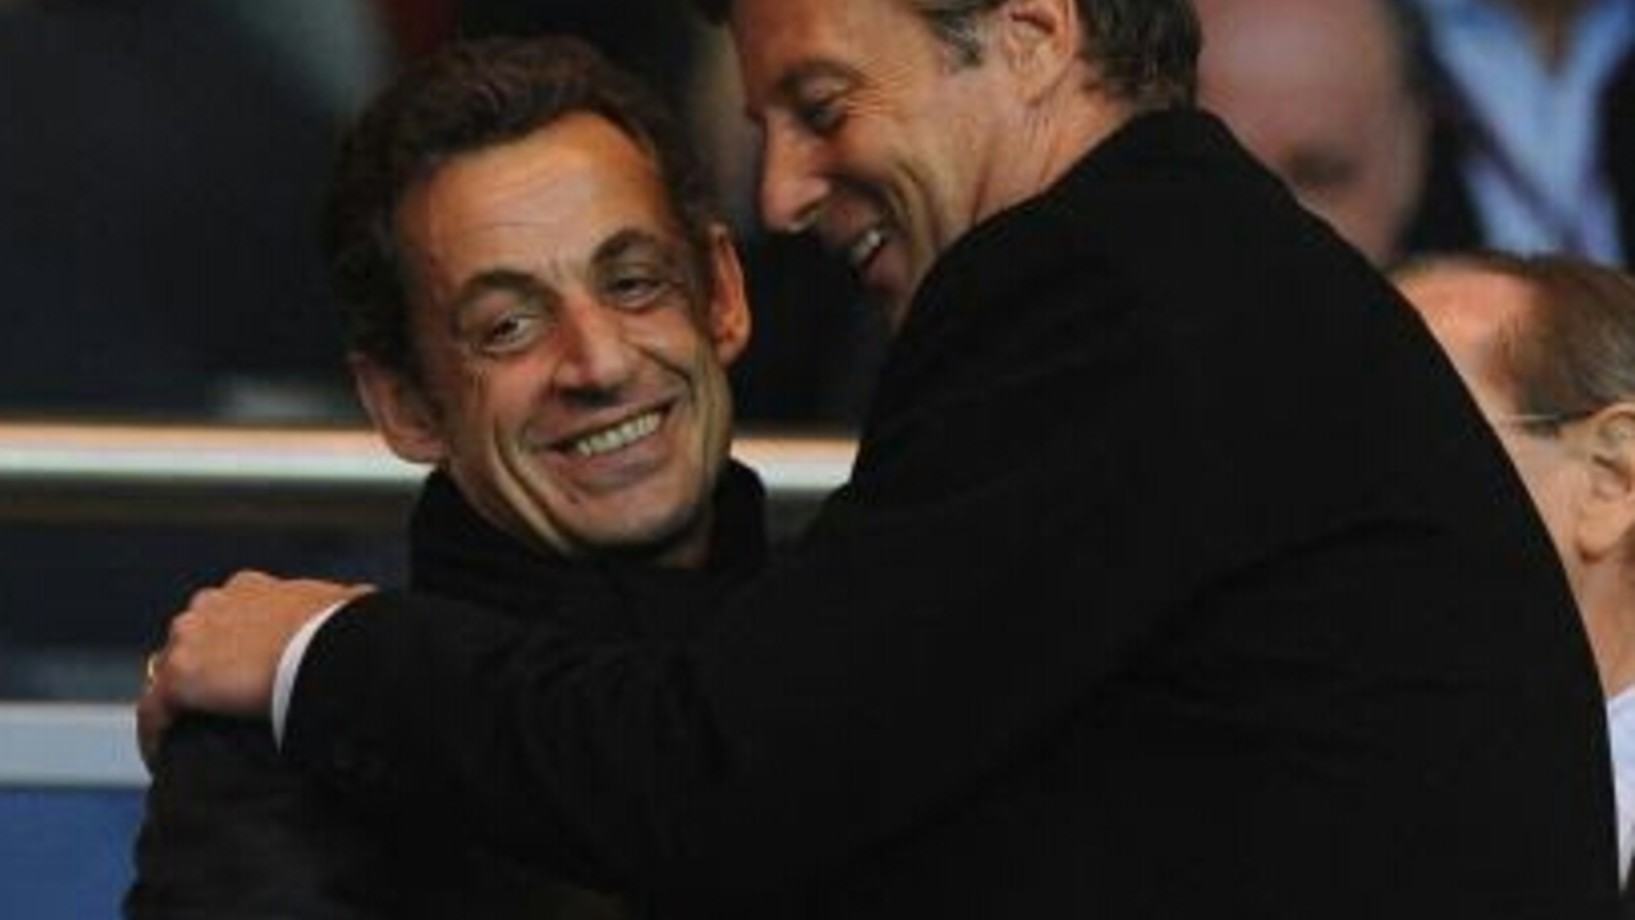 Ein Freund, ein guter Freund .... Nicolas Sarkozy und Sebastien Bazin in herzlichem Einvernehmen